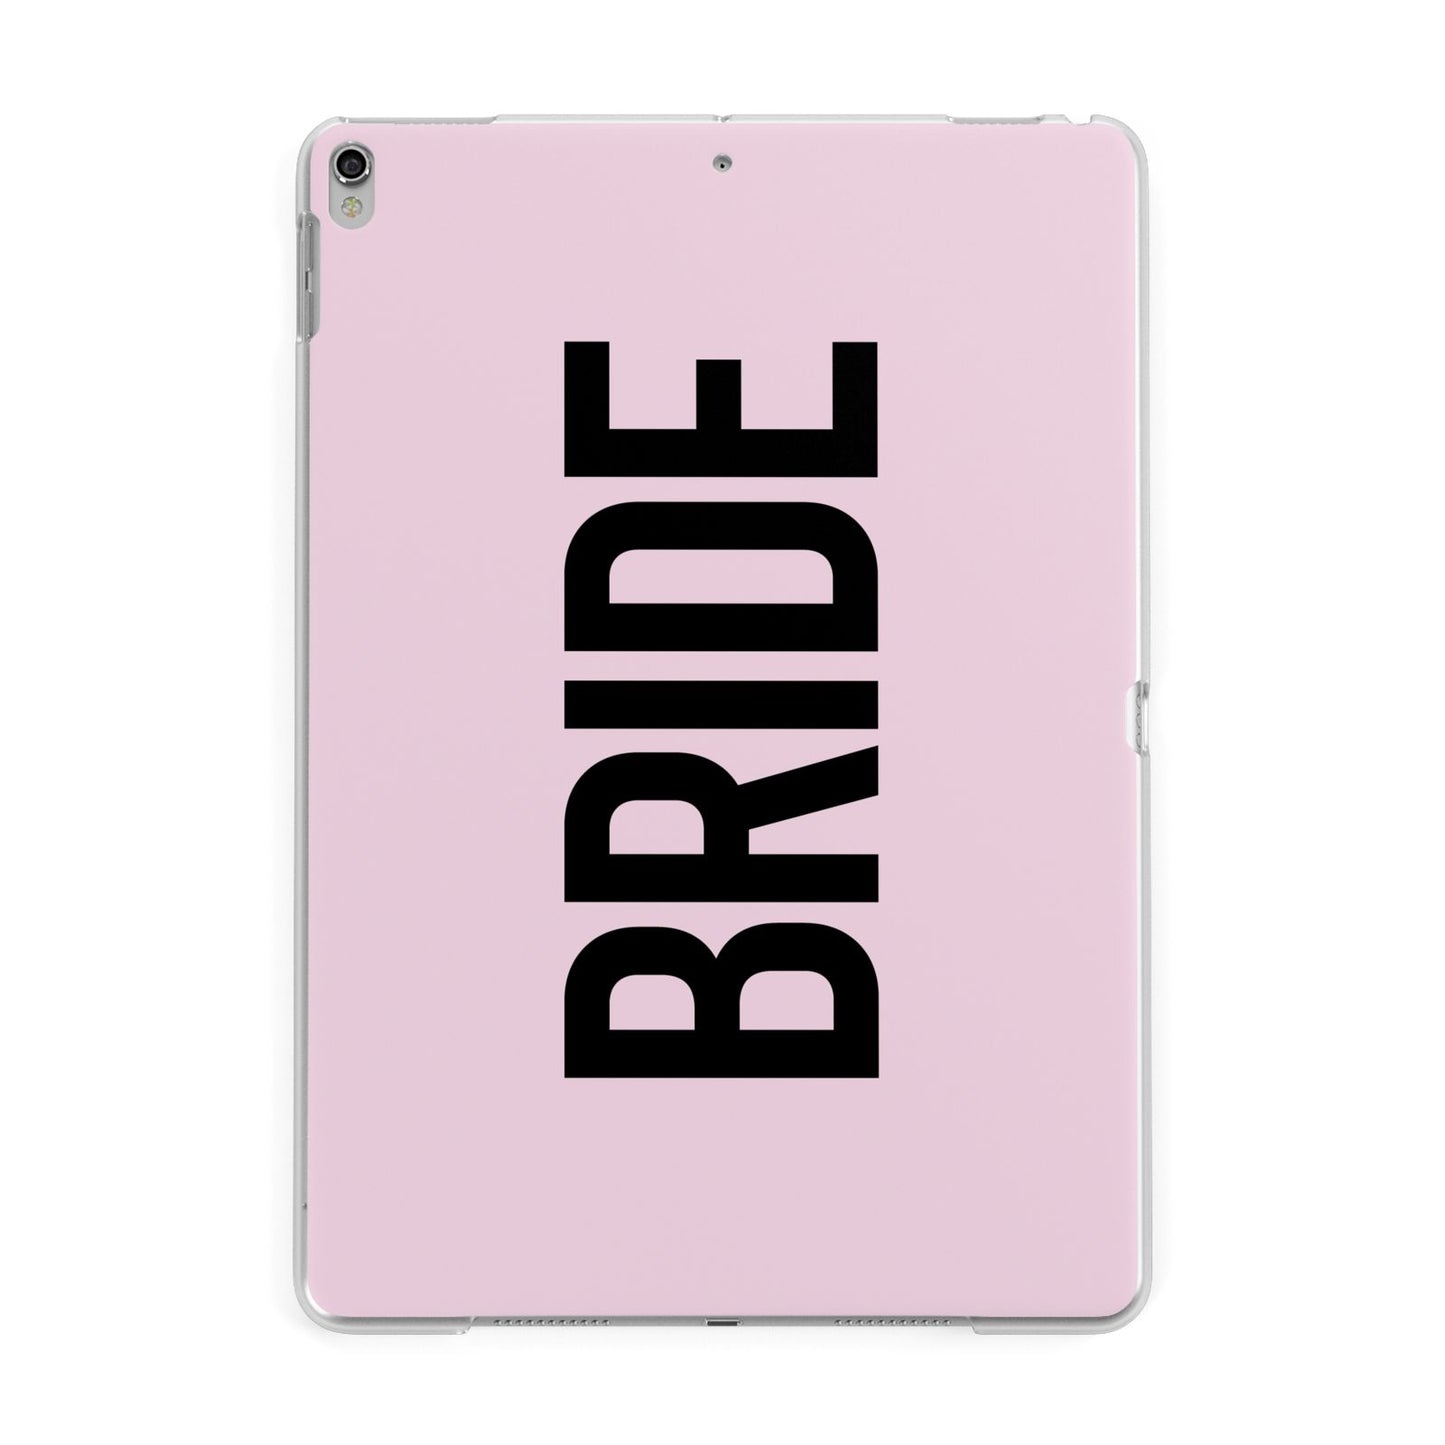 Bride Apple iPad Silver Case